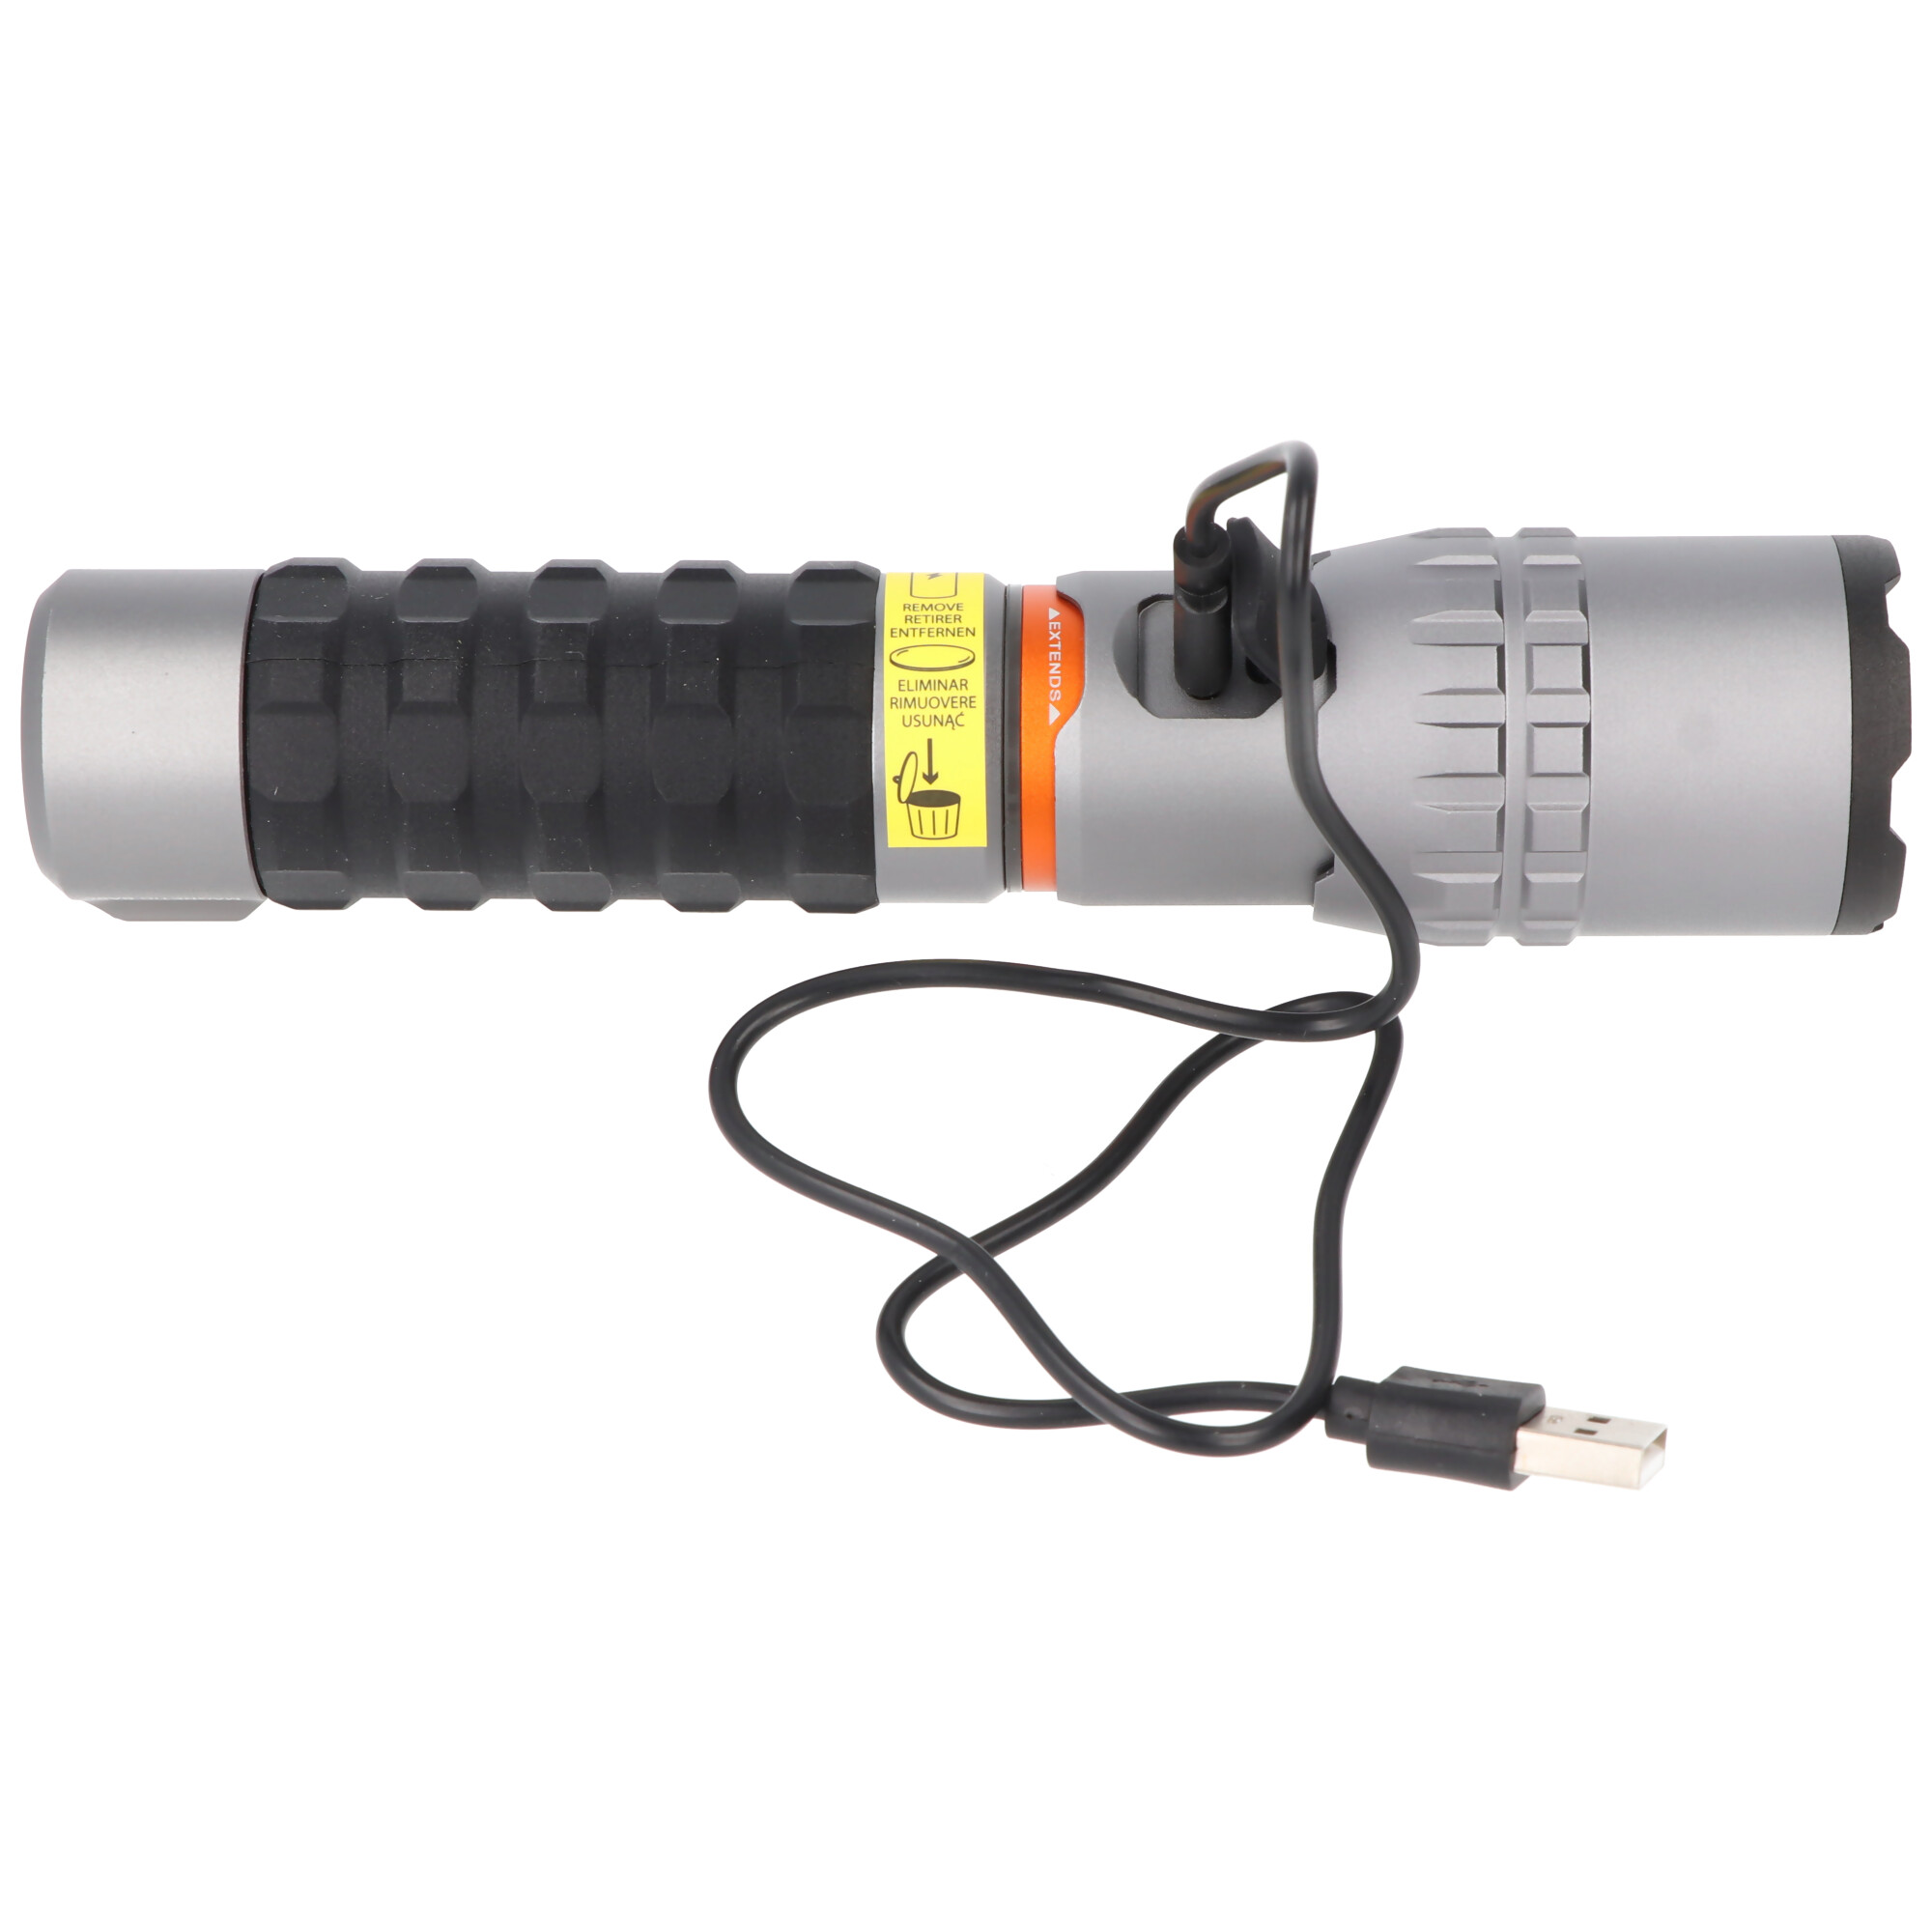 NEBO LED Taschenlampe SLYDE KING 2K mit bis zu 2000lm und 409m Leuchtweite integrierter Li-ion 18650 Akku 3,7V 2200mAh